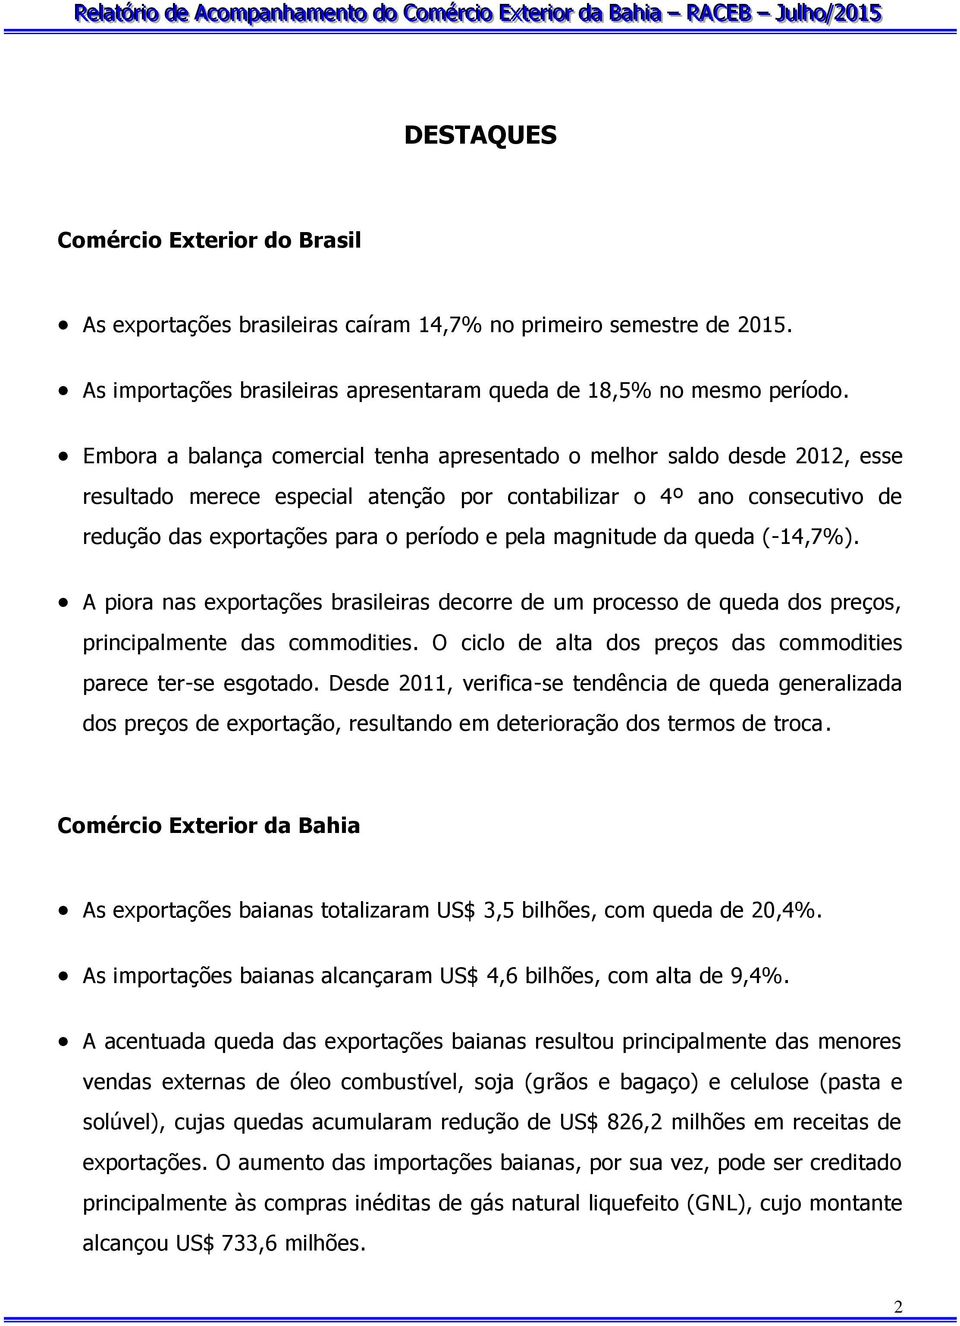 magnitude da queda (-14,7%). A piora nas exportações brasileiras decorre de um processo de queda dos preços, principalmente das commodities.